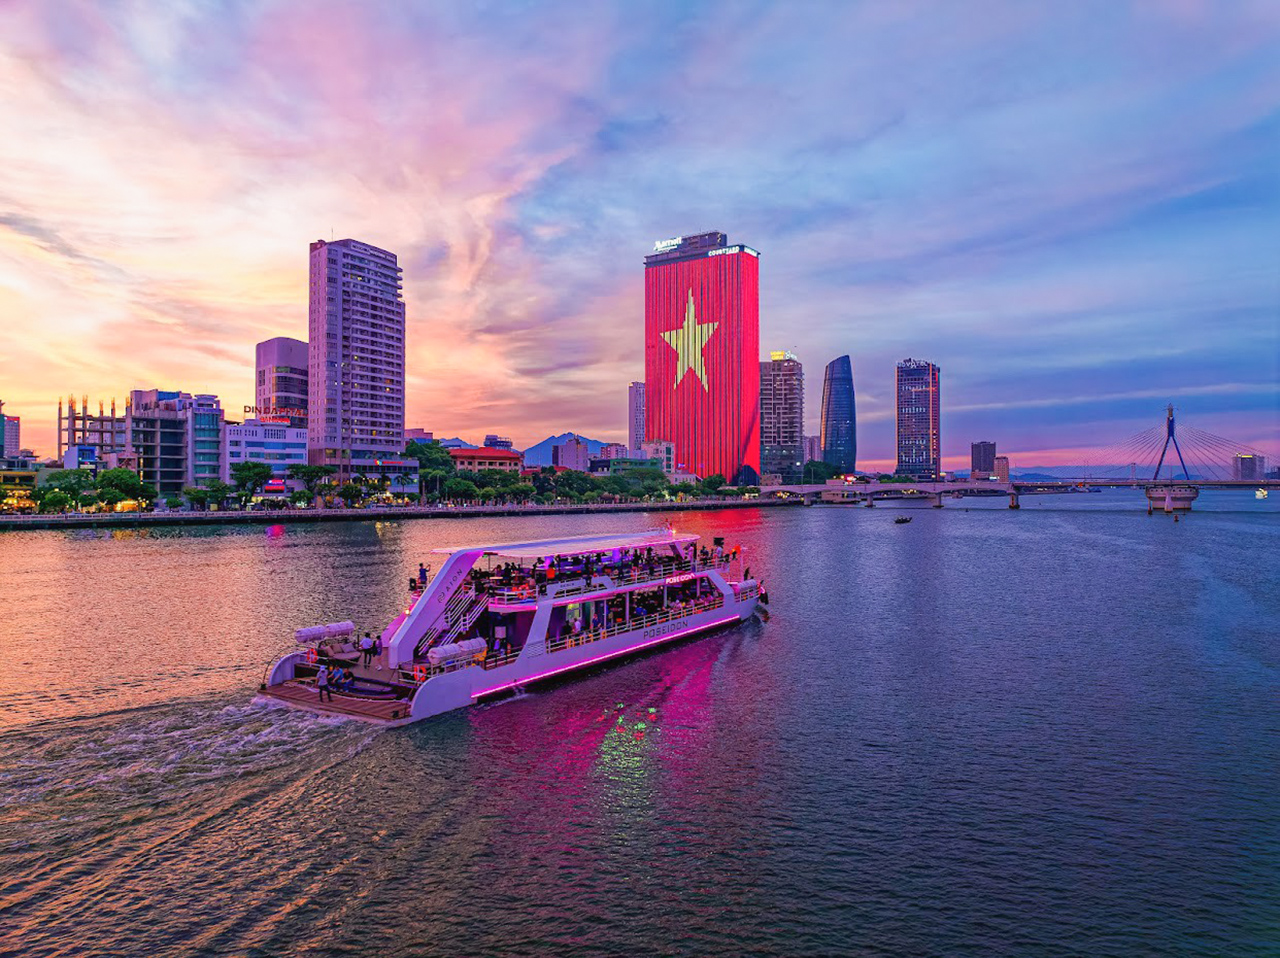 TP.Đà Nẵng nâng cấp hạ tầng sông Hàn nhằm khuyến khích hoạt động đầu tư thương mại, du lịch, nhất là các dịch vụ cao cấp như du thuyền, trải nghiệm trên sông